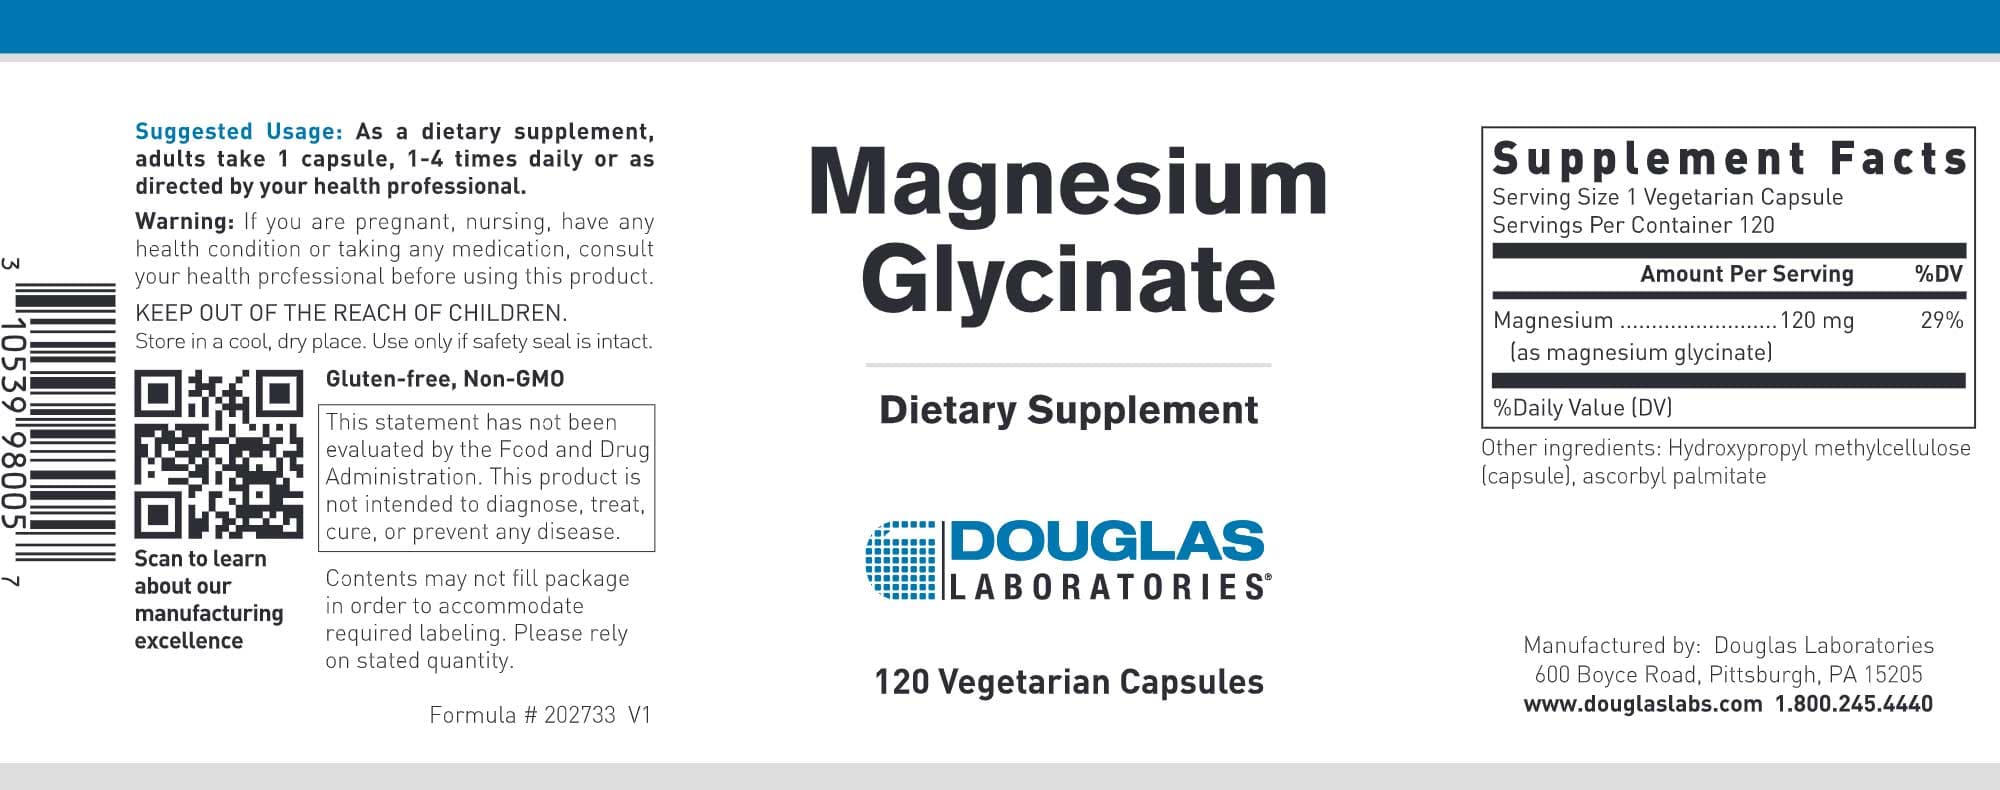 Douglas Laboratories Magnesium Glycinate Label